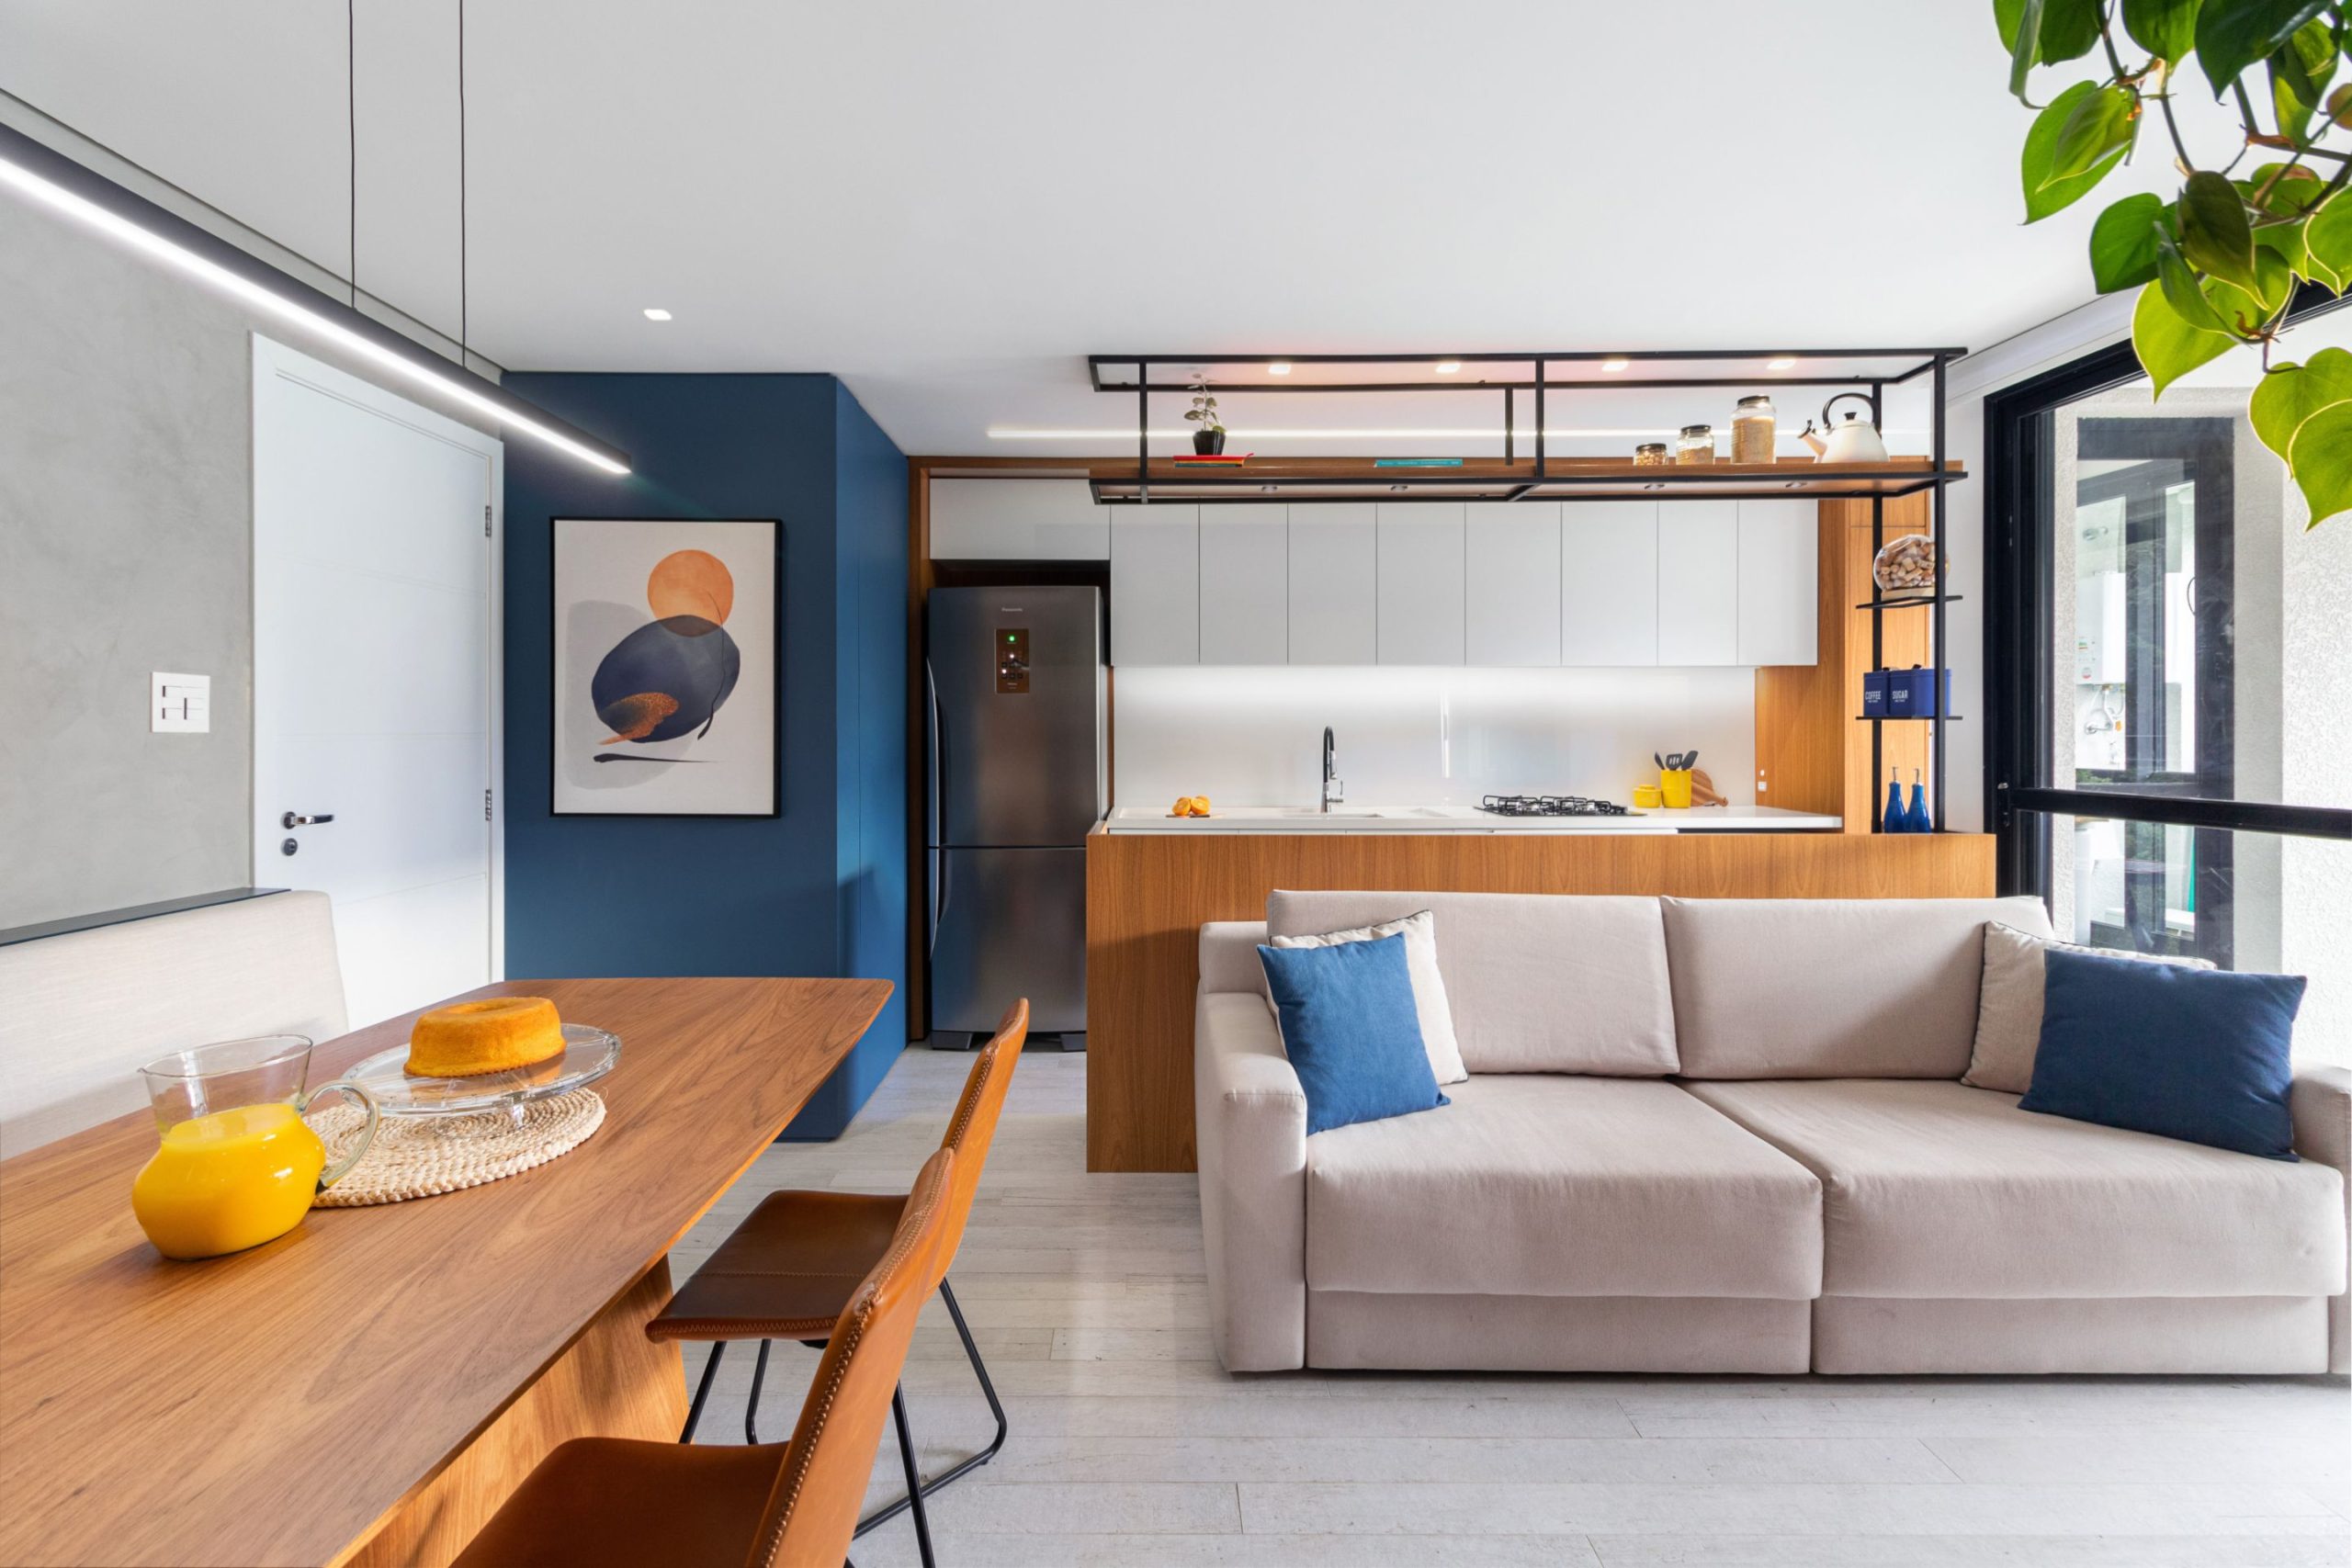 Apartamento com salas e cozinha integrada traz a cor azul em destaque.